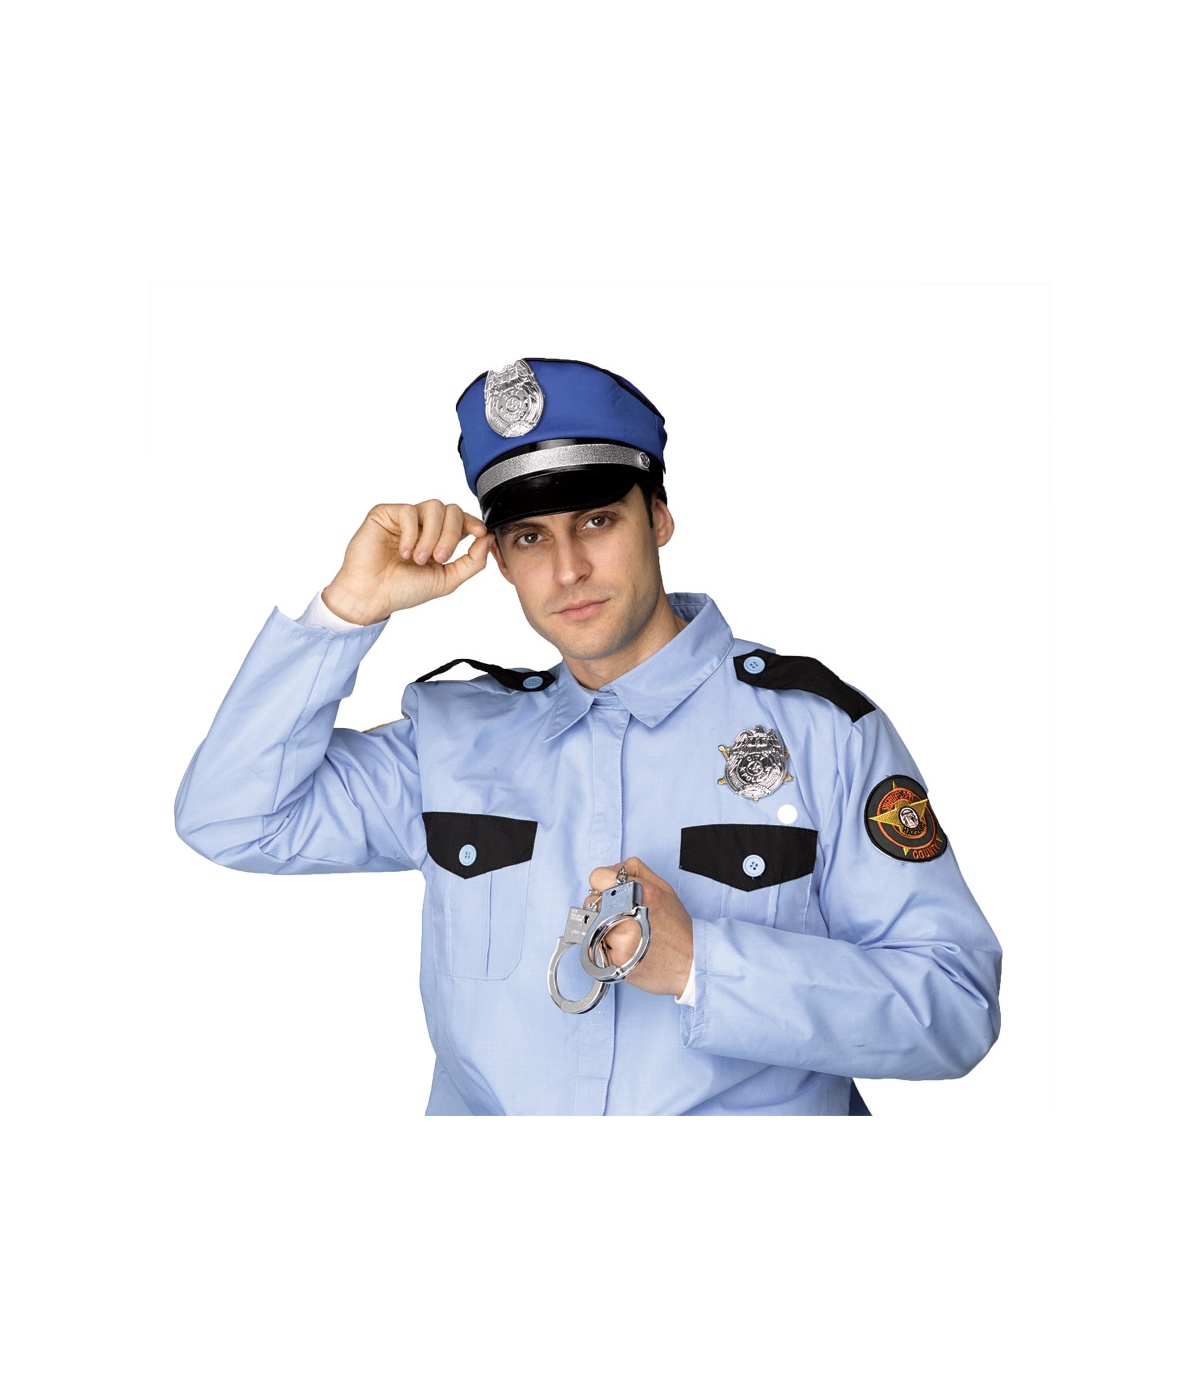  Police Kit Costume